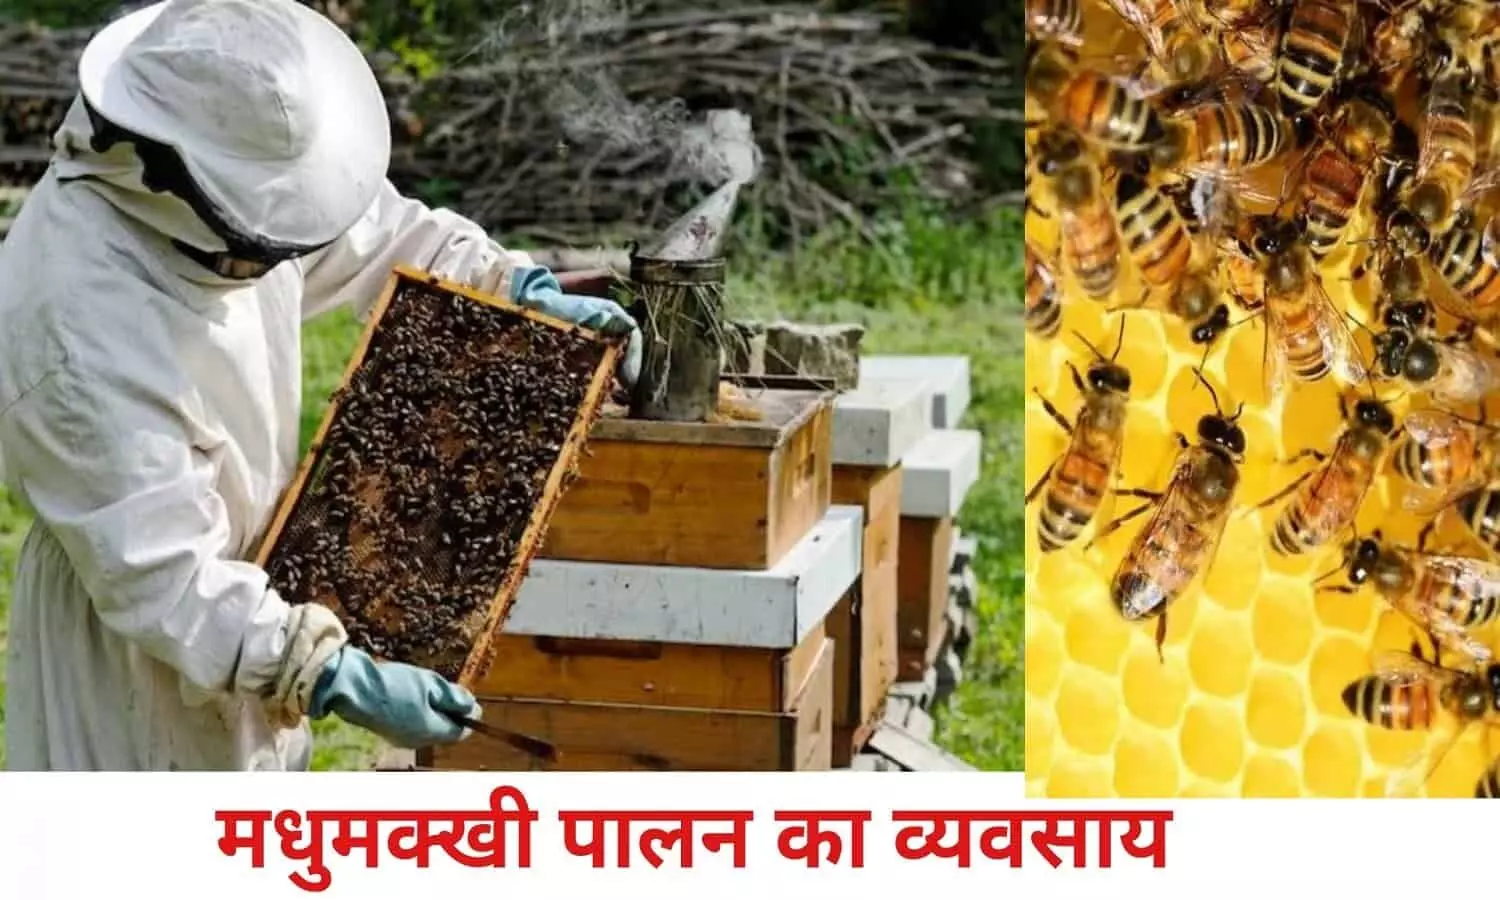 Beekeeping Business: मधुमक्खी पालन के बिजनेस ने मार्केट में लगाई आग, सरकार दे रही 85% सब्सिडी, हर महीने 5 लाख की कमाई तय